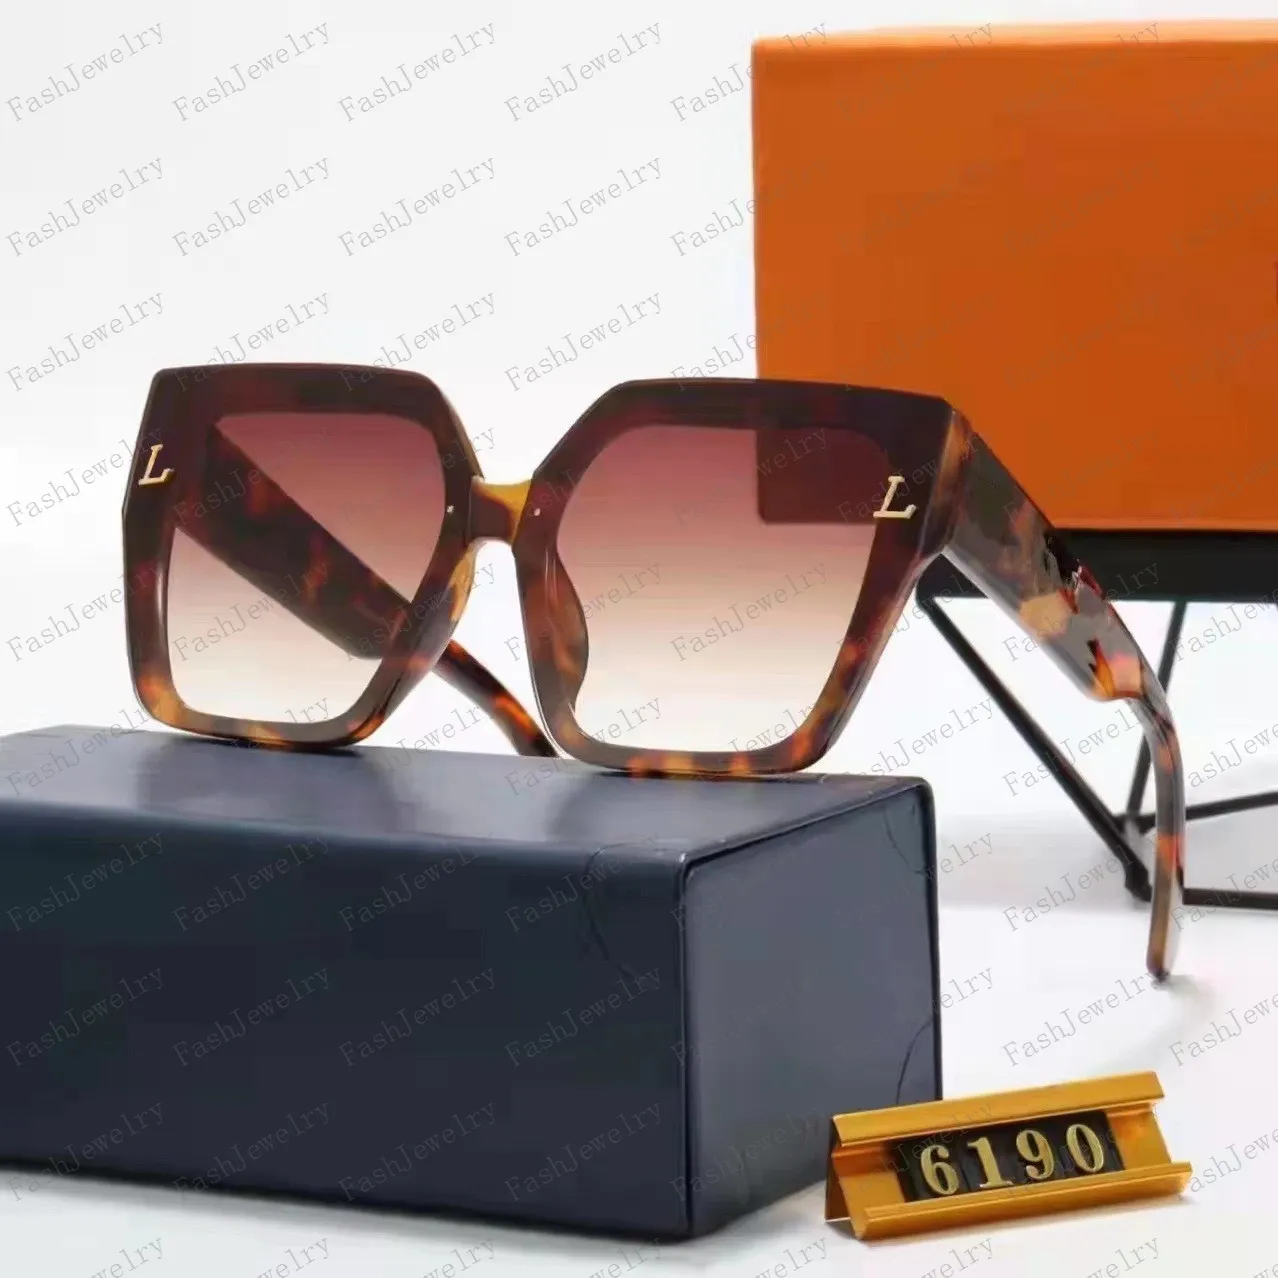 Großhandel Sonnenbrille Original Brillen Outdoor Shades PC Rahmen Mode Classic Lady Mirrors für Frauen und Männer Brille Unisex 20 Farben